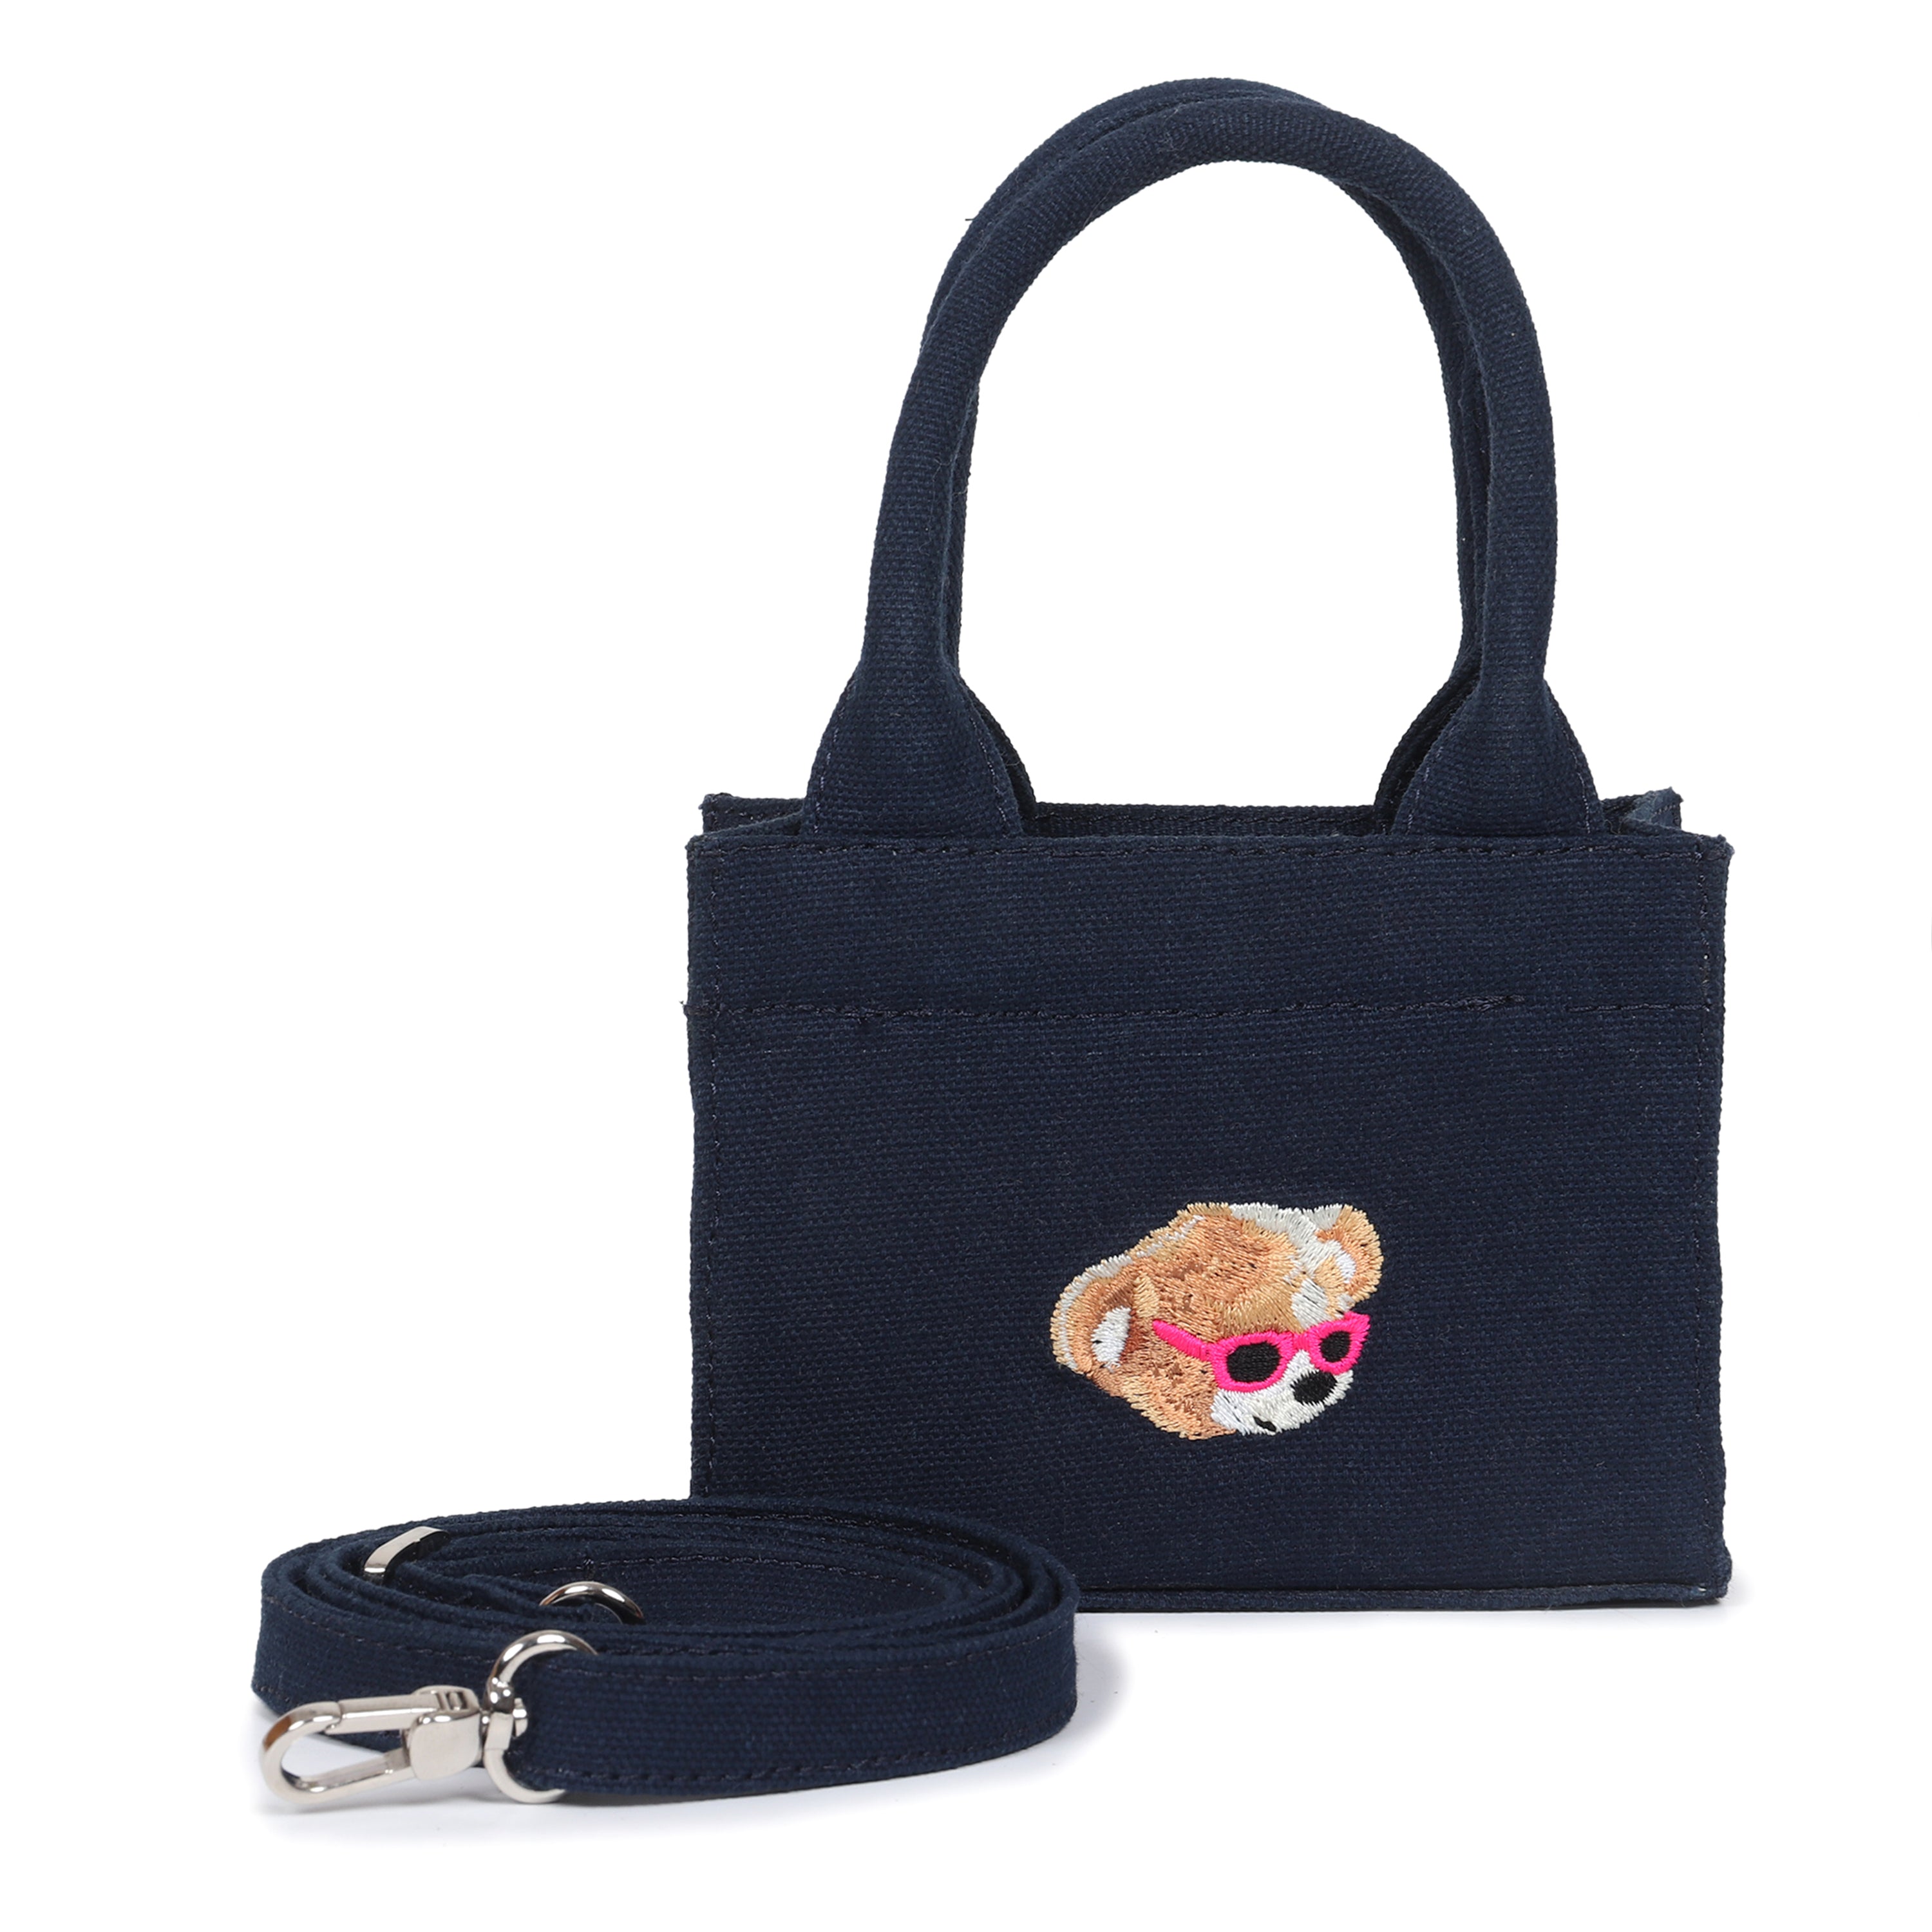 Bear Handbag - Mini